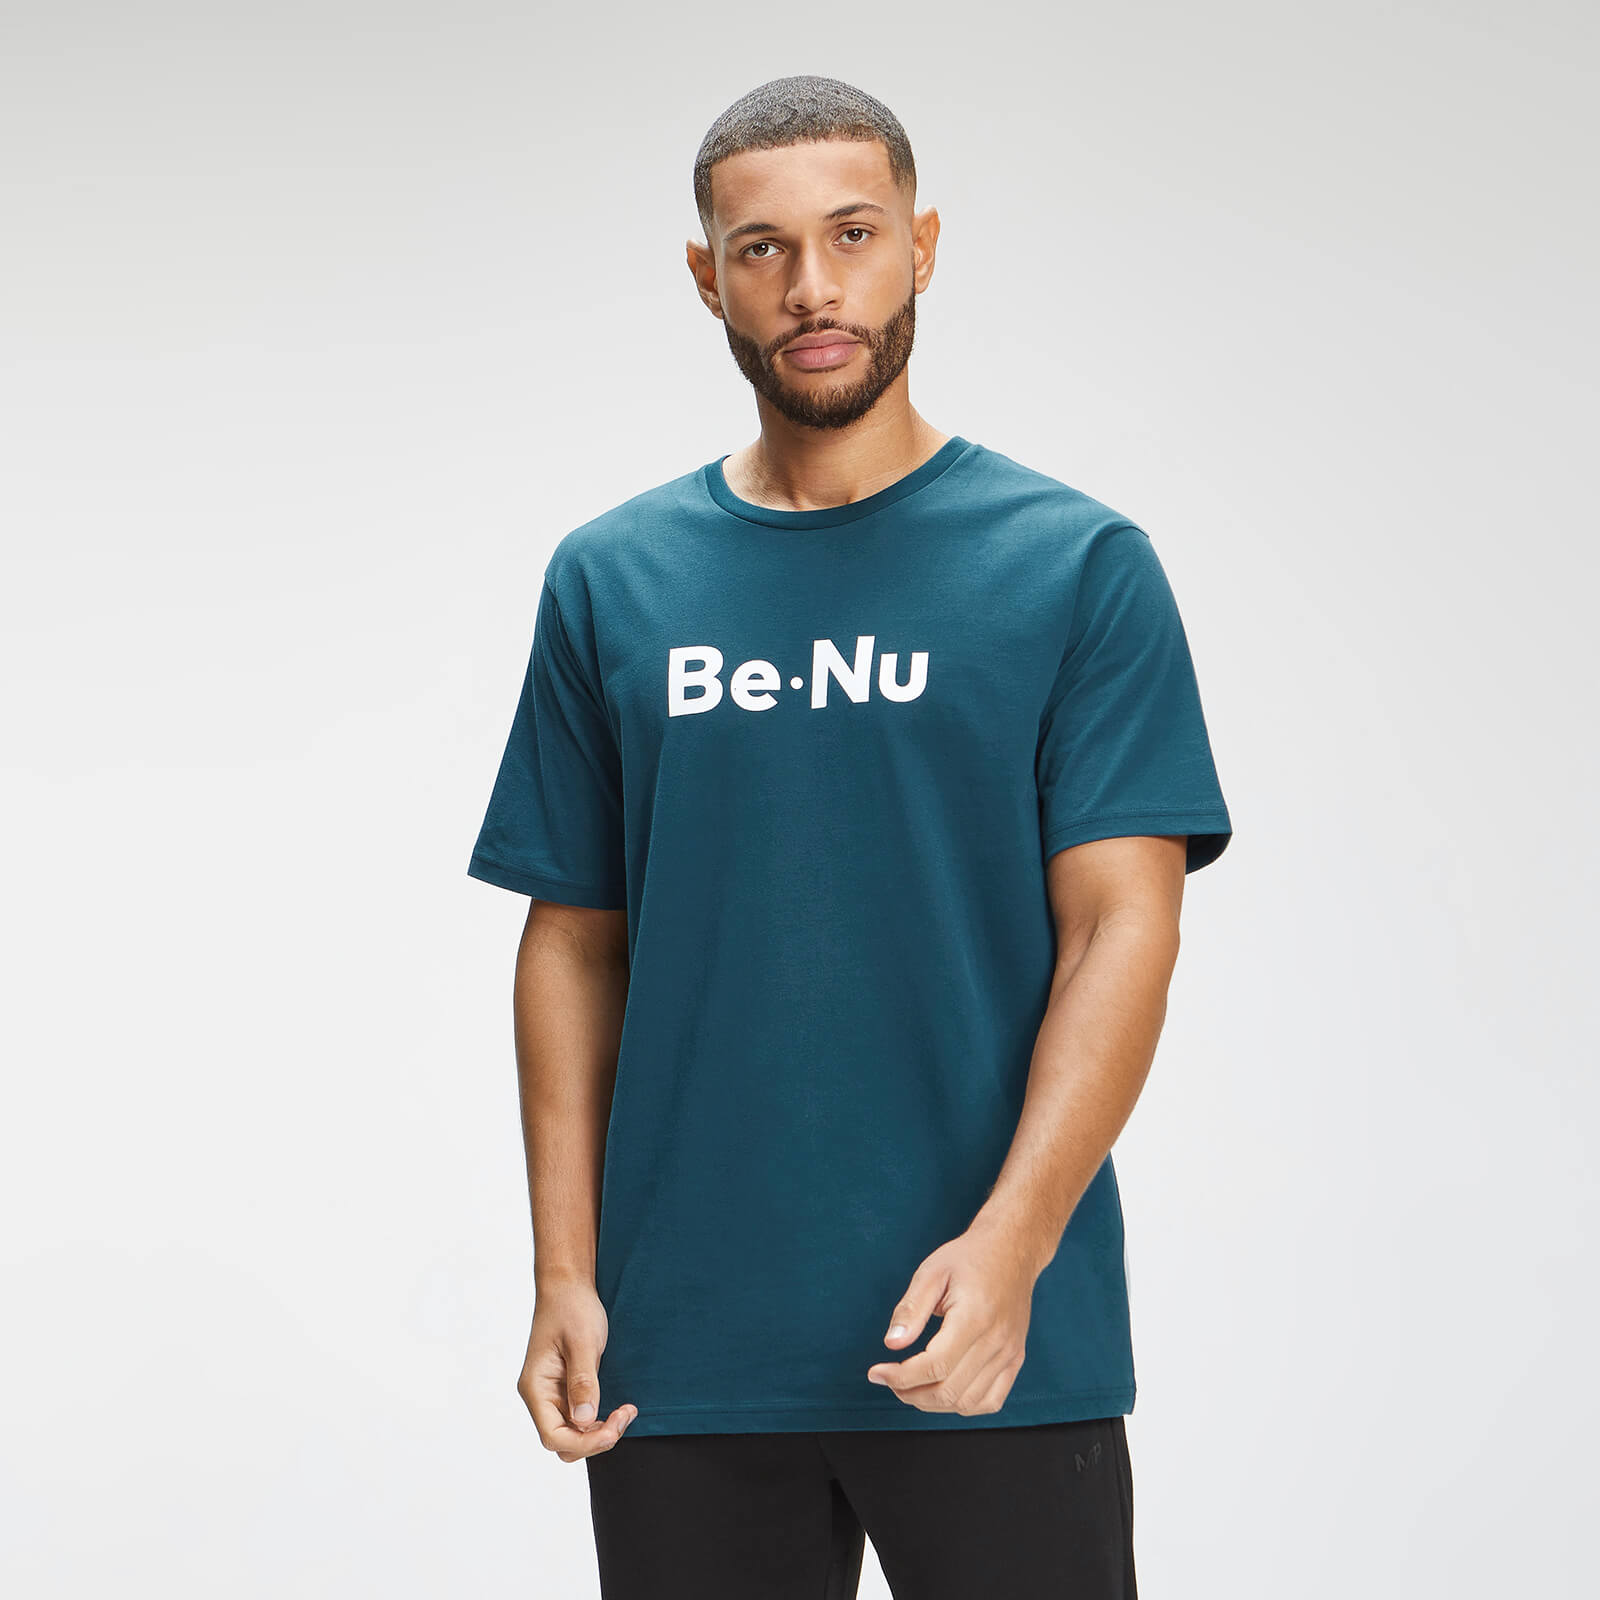 BeNu Men's Short Sleeve T-Shirt - Blue - XXXL